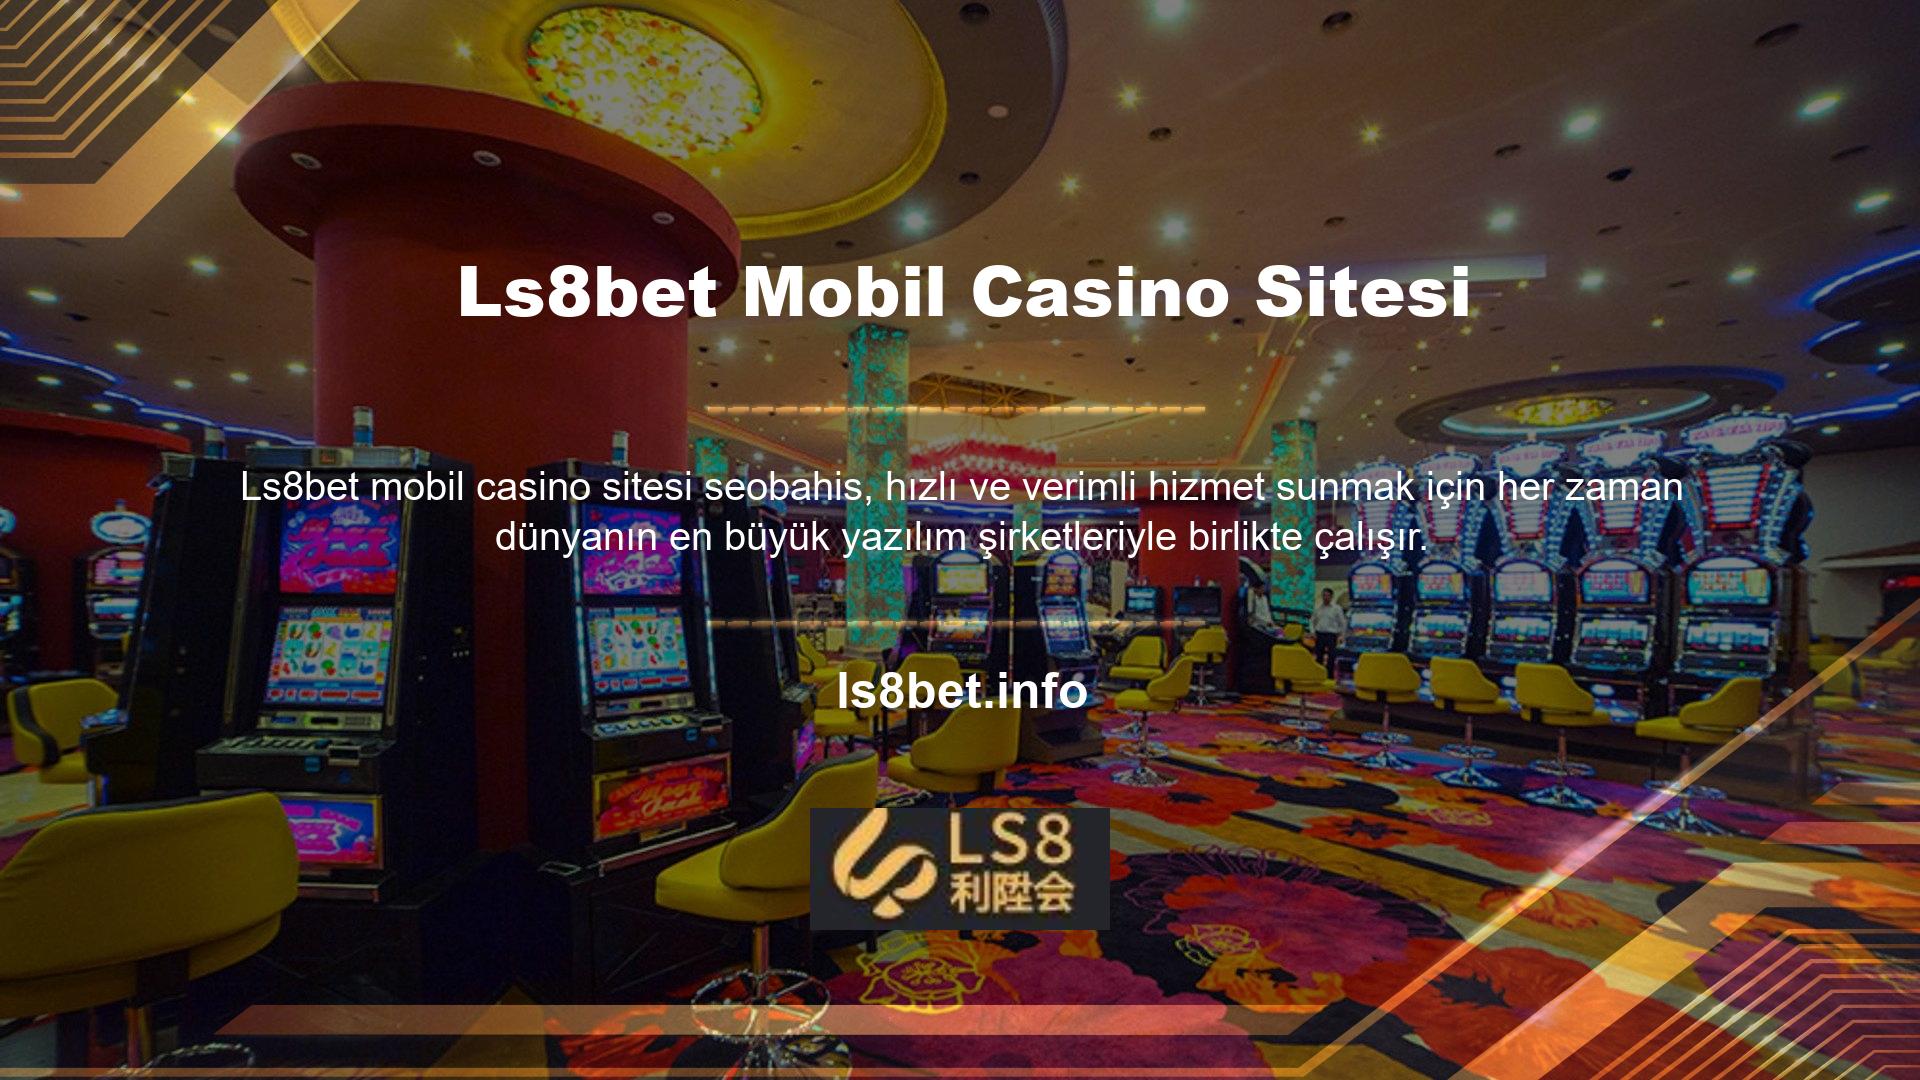 Mobil sitemizde tüm casino oyunlarının keyfini tek tıkla çıkarabilirsiniz